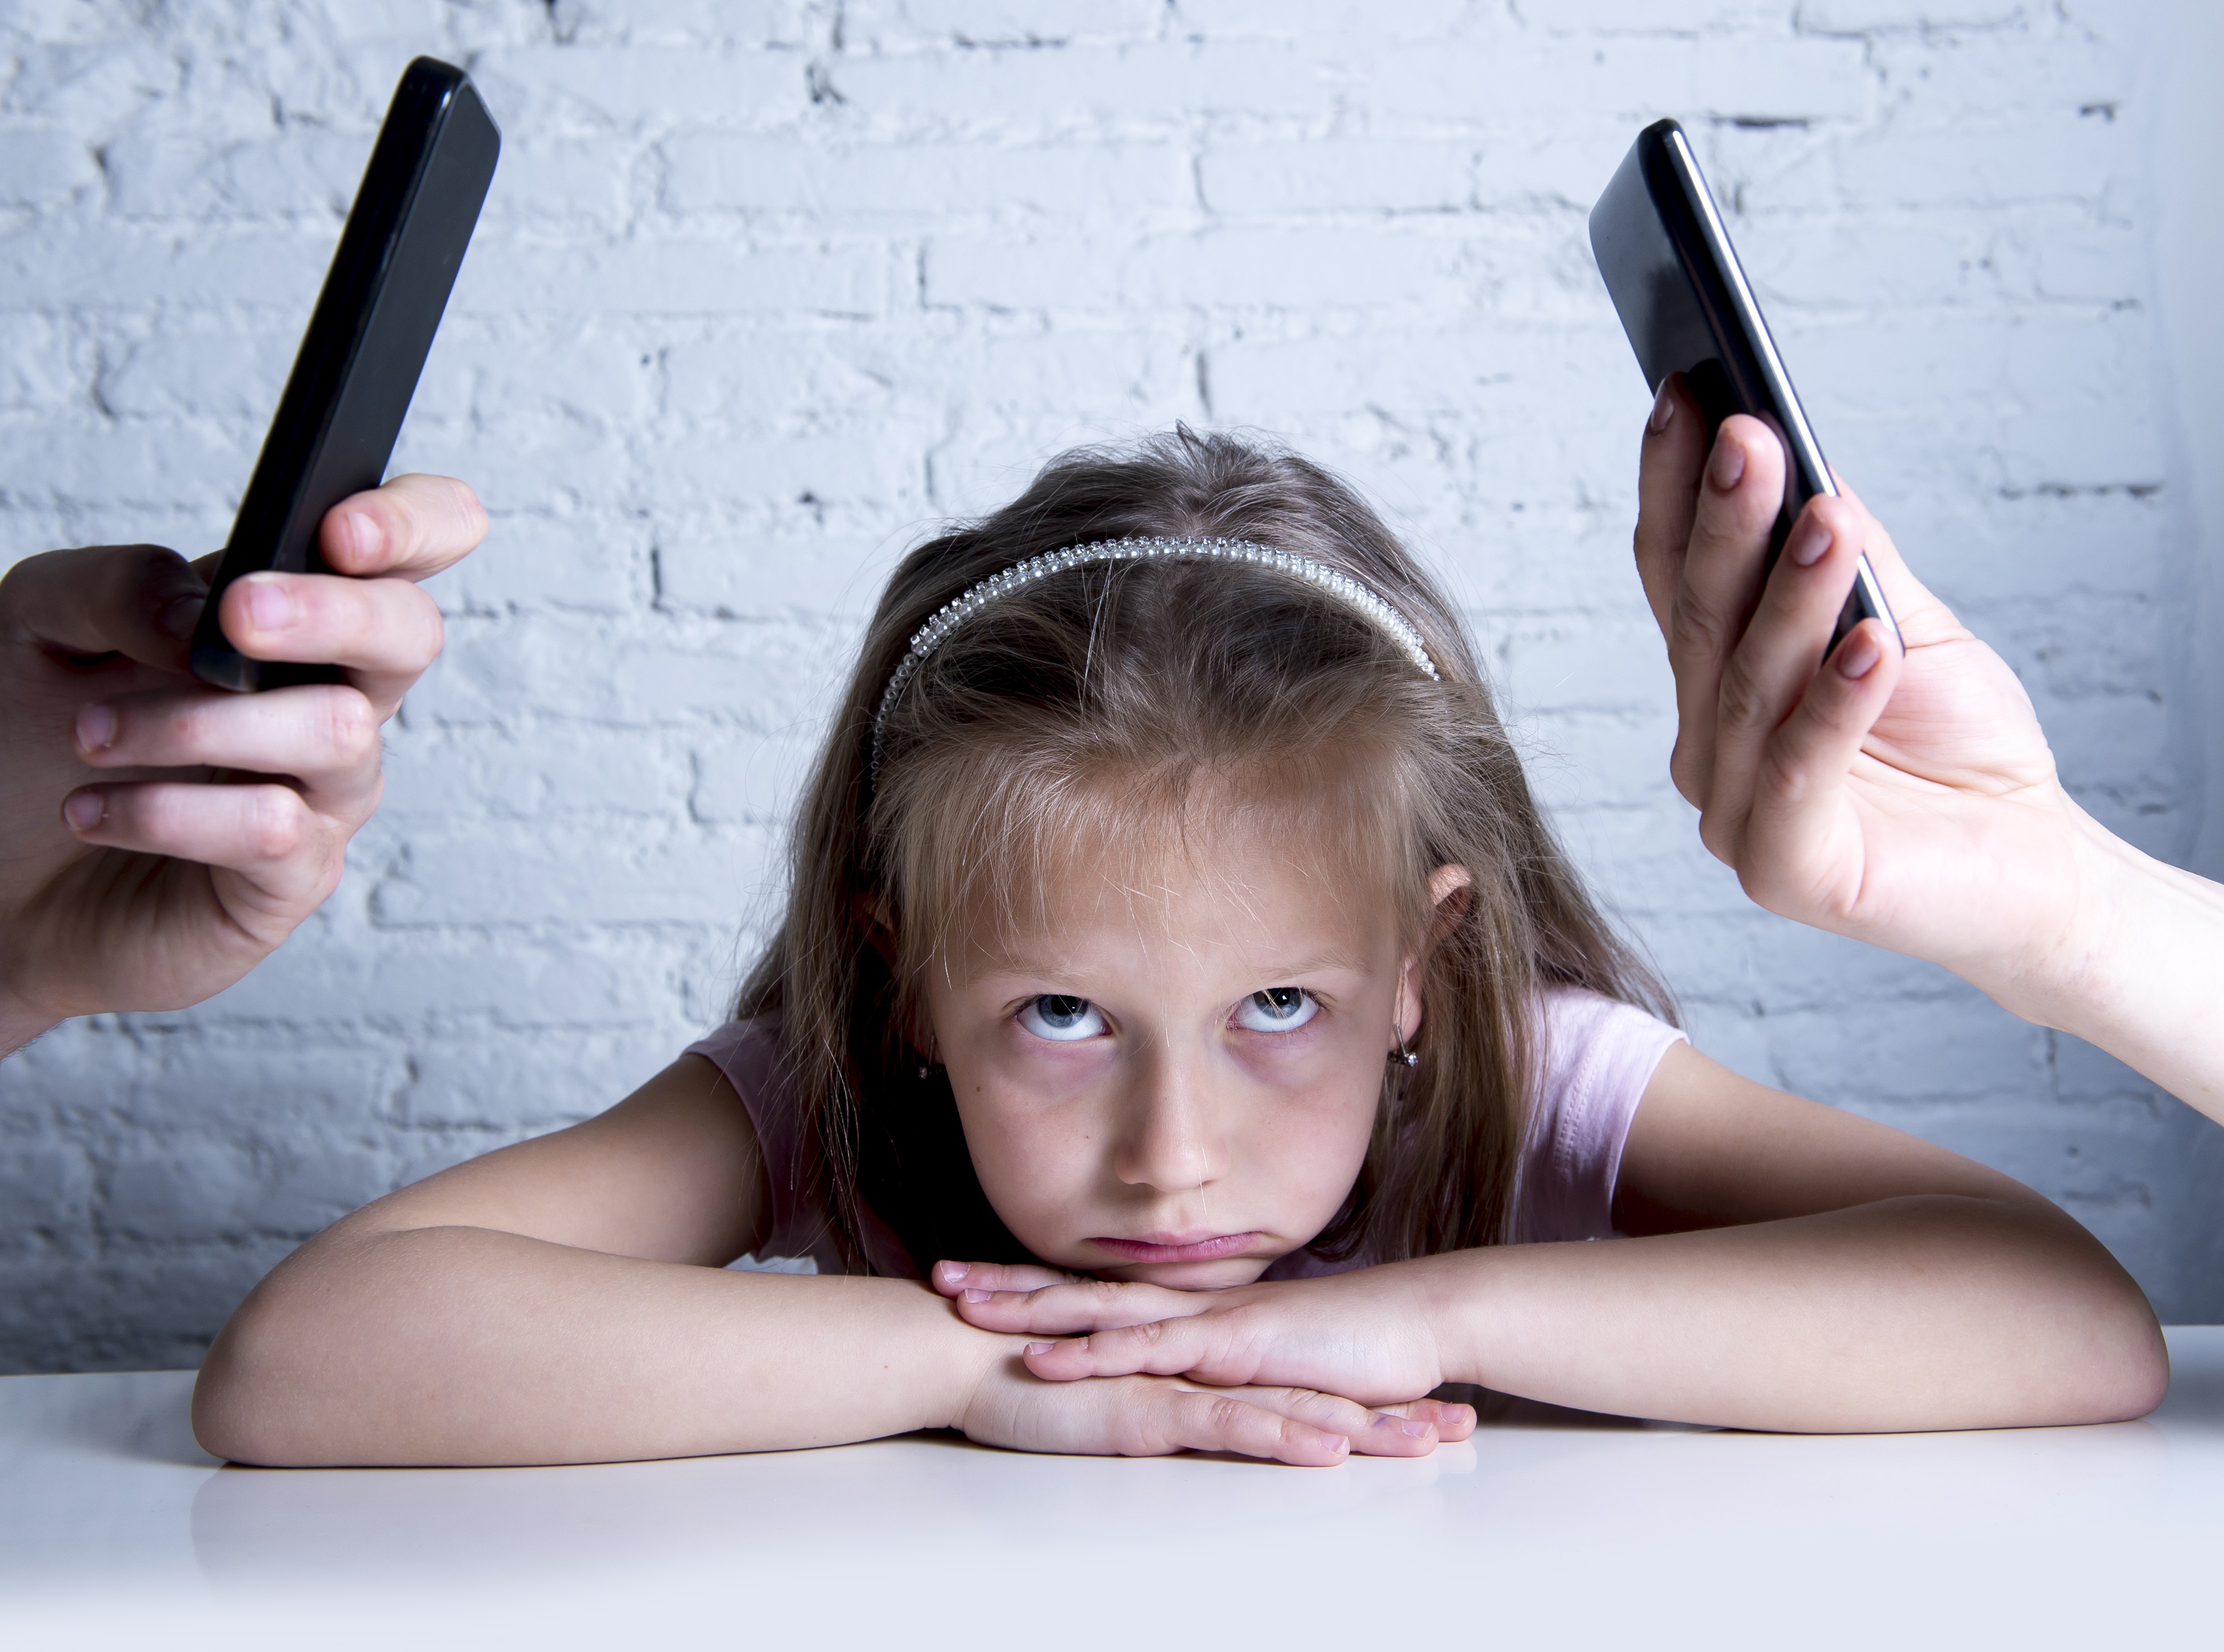 As Crianças São Sorrir, Olhando a Exposição Do Telefone Celular